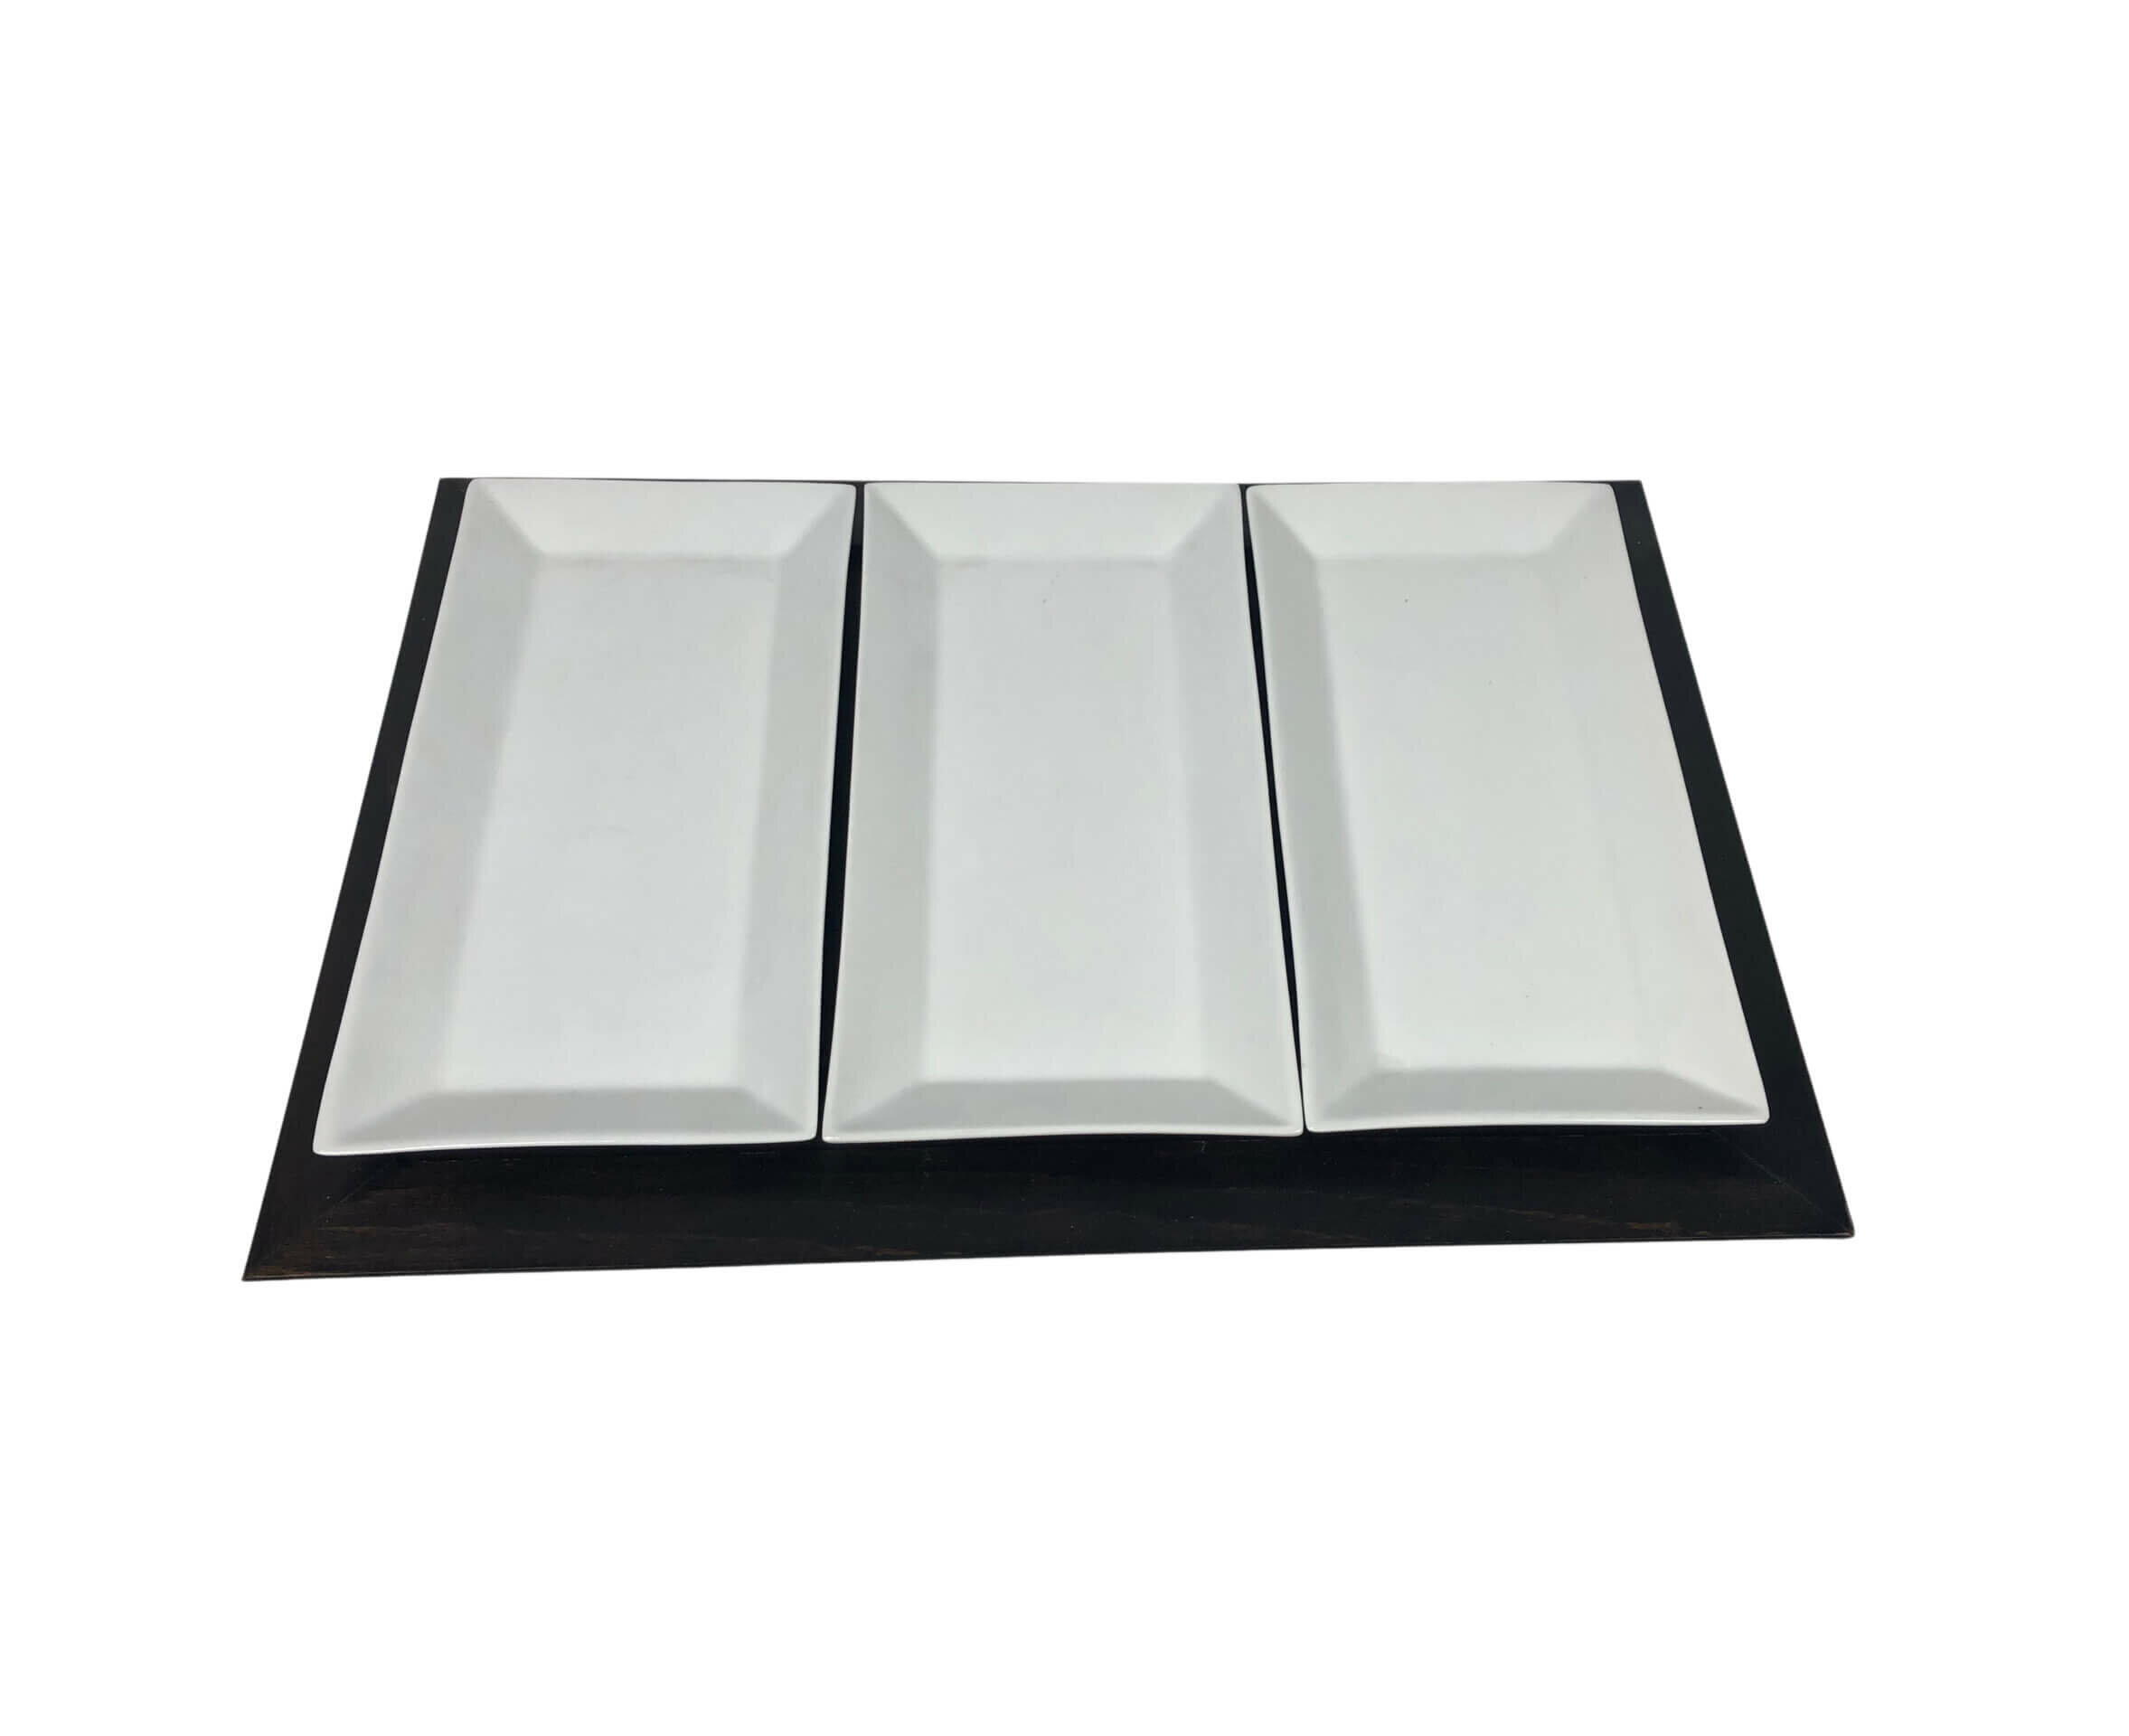 Ξύλινος Δίσκος Σερβιρίσματος Καφέ Σκούρο Με 3 Πιατάκια 40x27,5cm